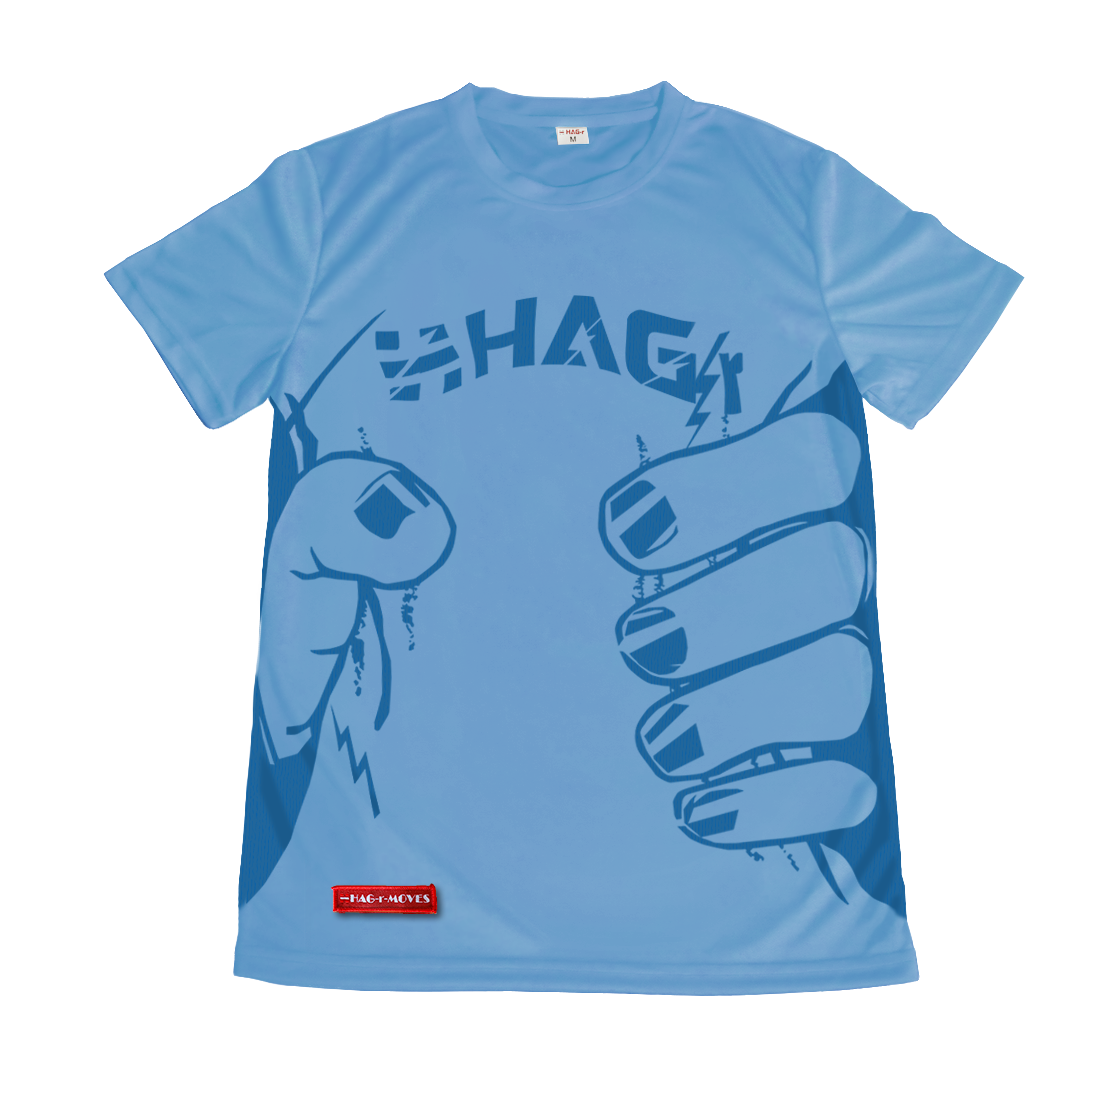 「HAG-r」のむぎゅっロゴ入りTシャツ